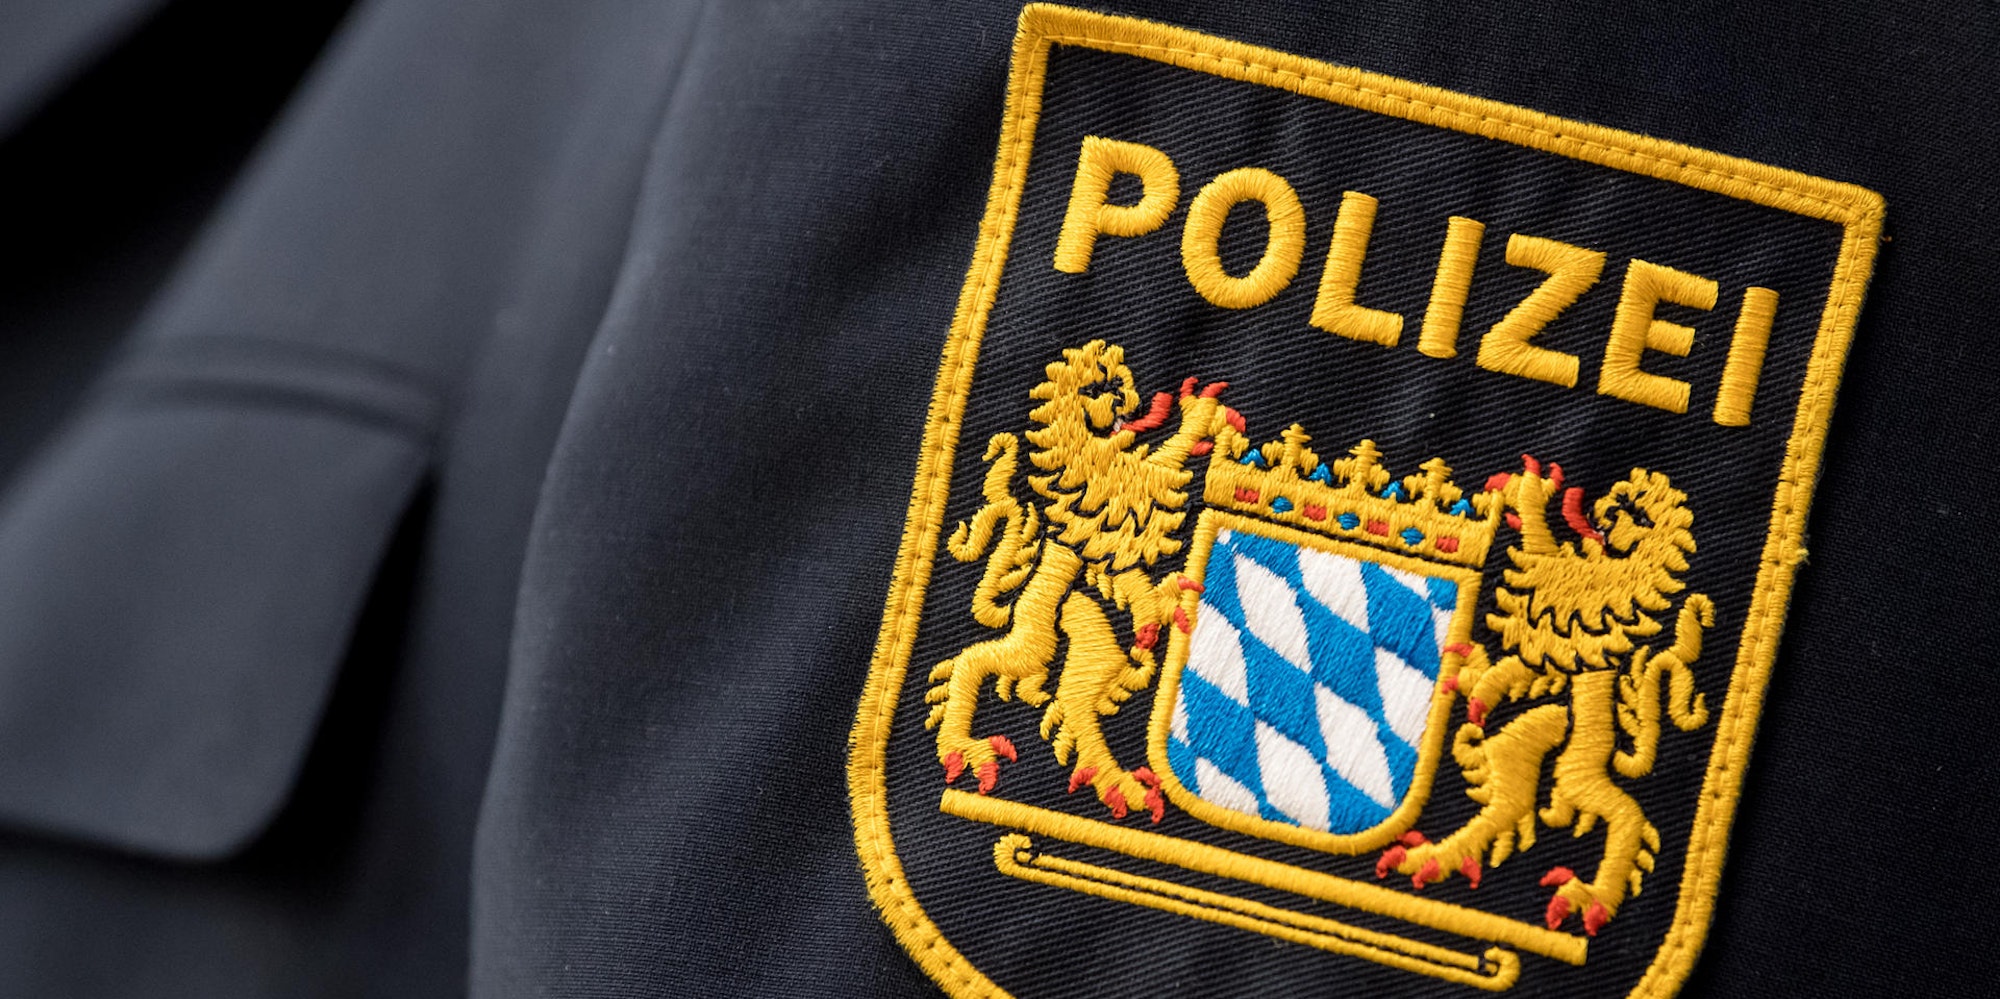 bayrische Polizei Abzeichen Wappen